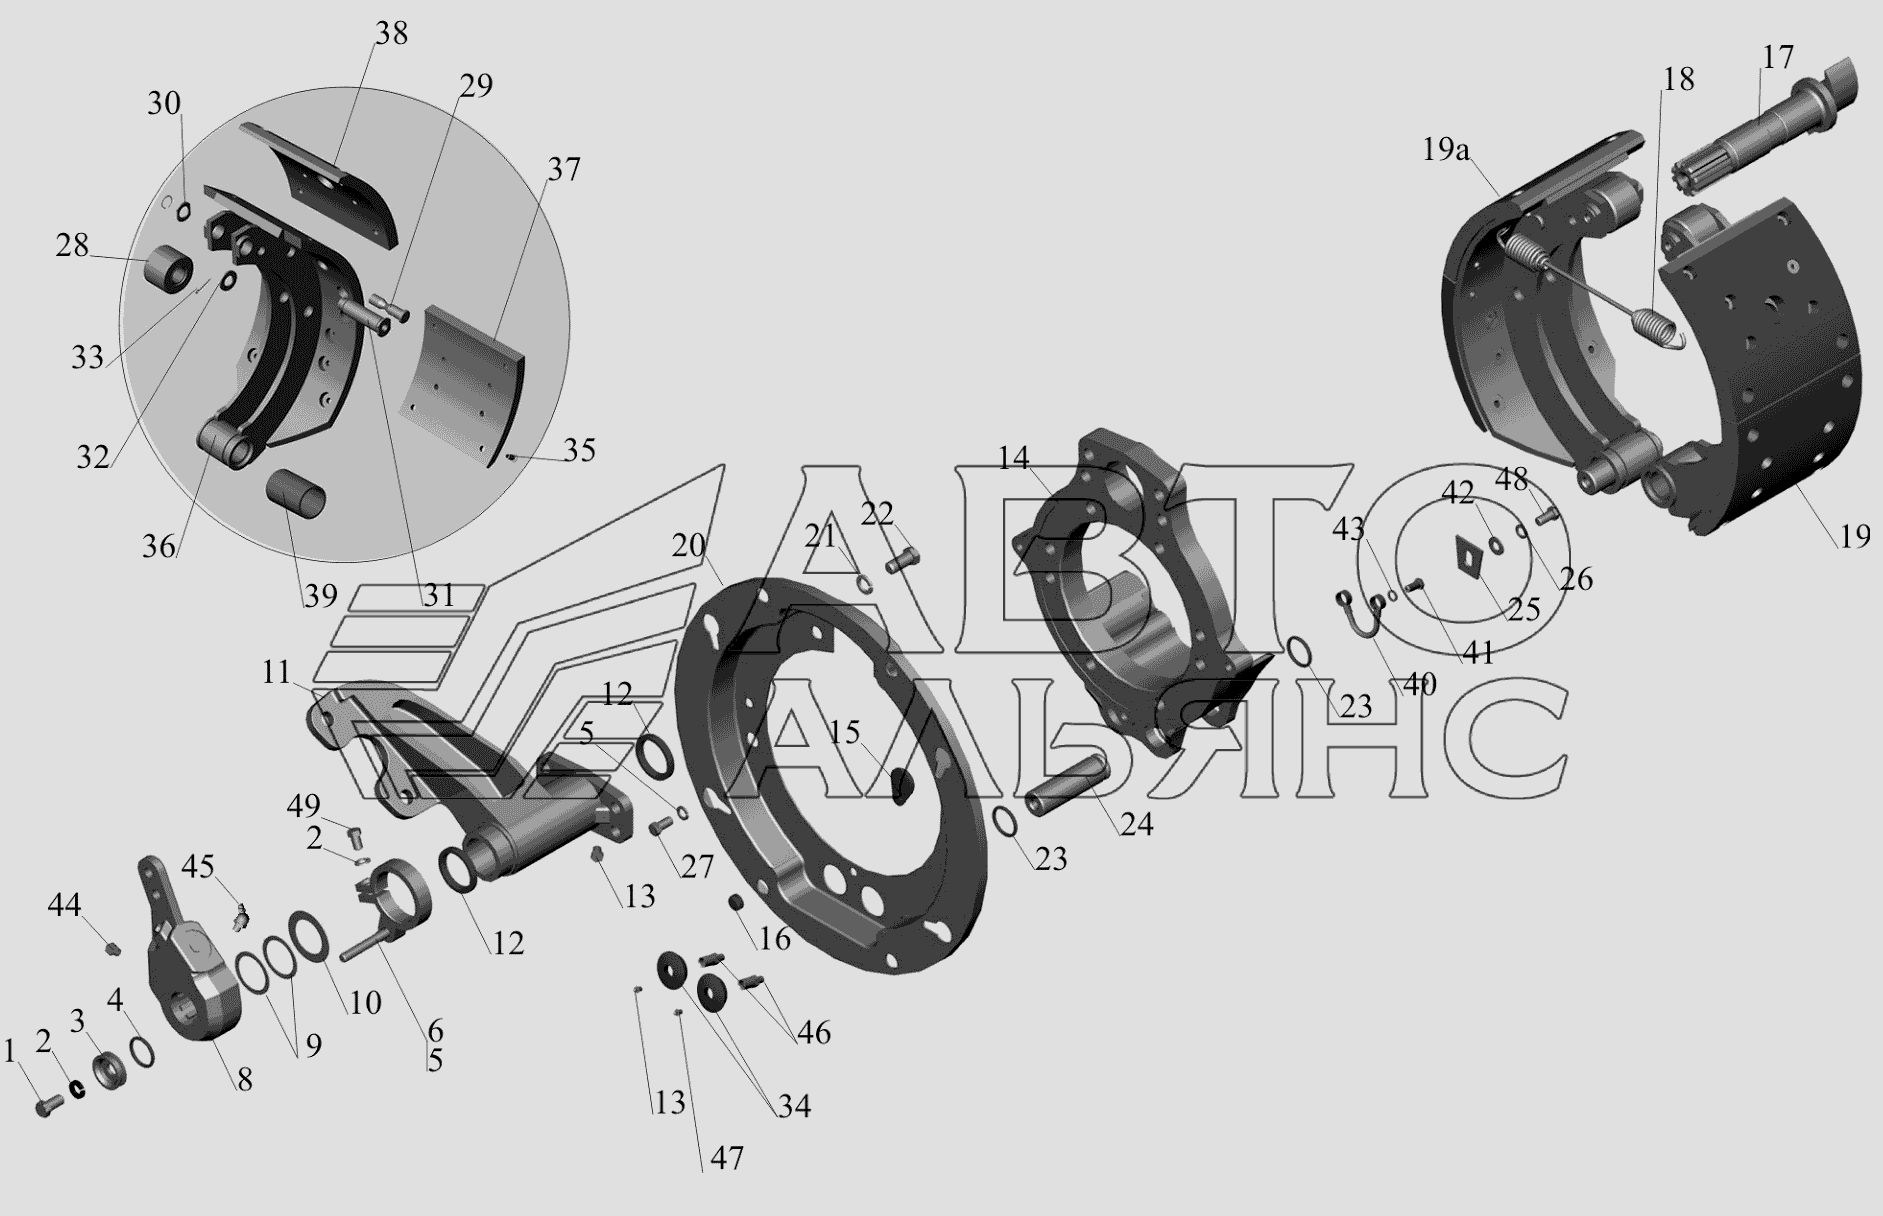 Тормозной механизм передних колес 6516-3501004 (6516-3501005) МАЗ-650119